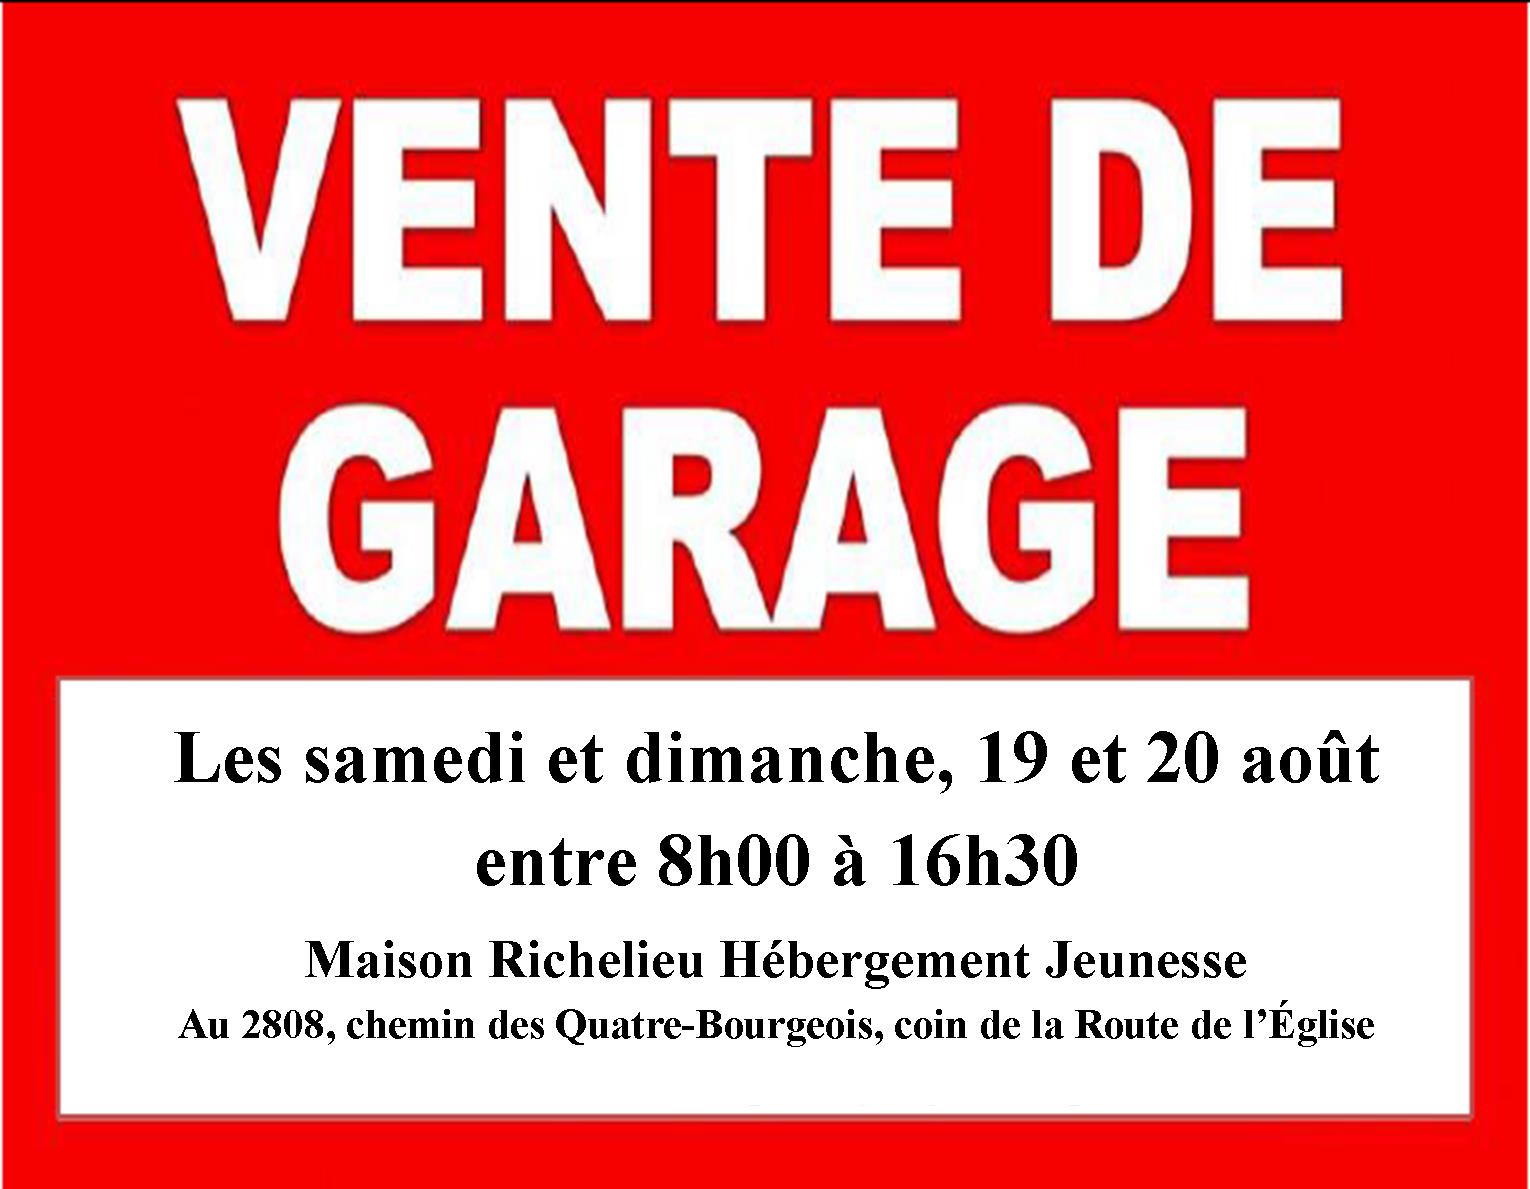 Méga vente de garage Maison Richelieu